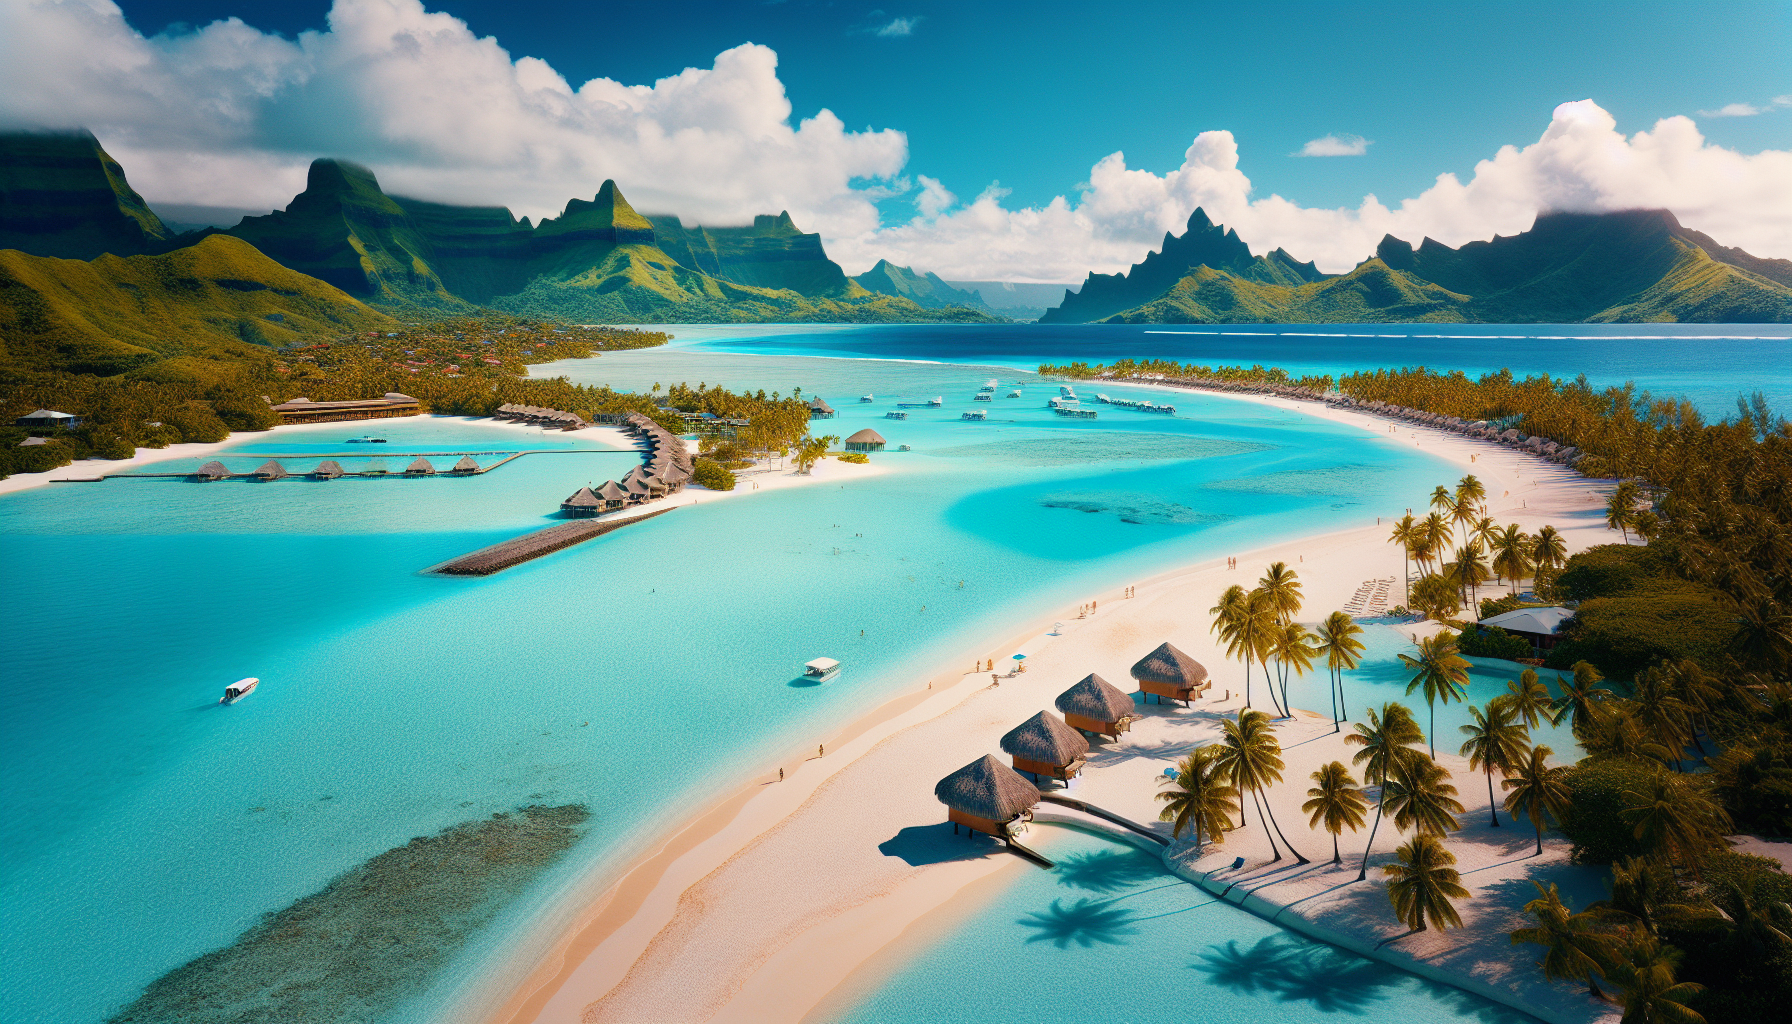 Bãi biển Bora Bora: Nằm ở Thái Bình Dương, Bora Bora được biết đến với các bãi biển cát trắng mịn và nước biển trong xanh.